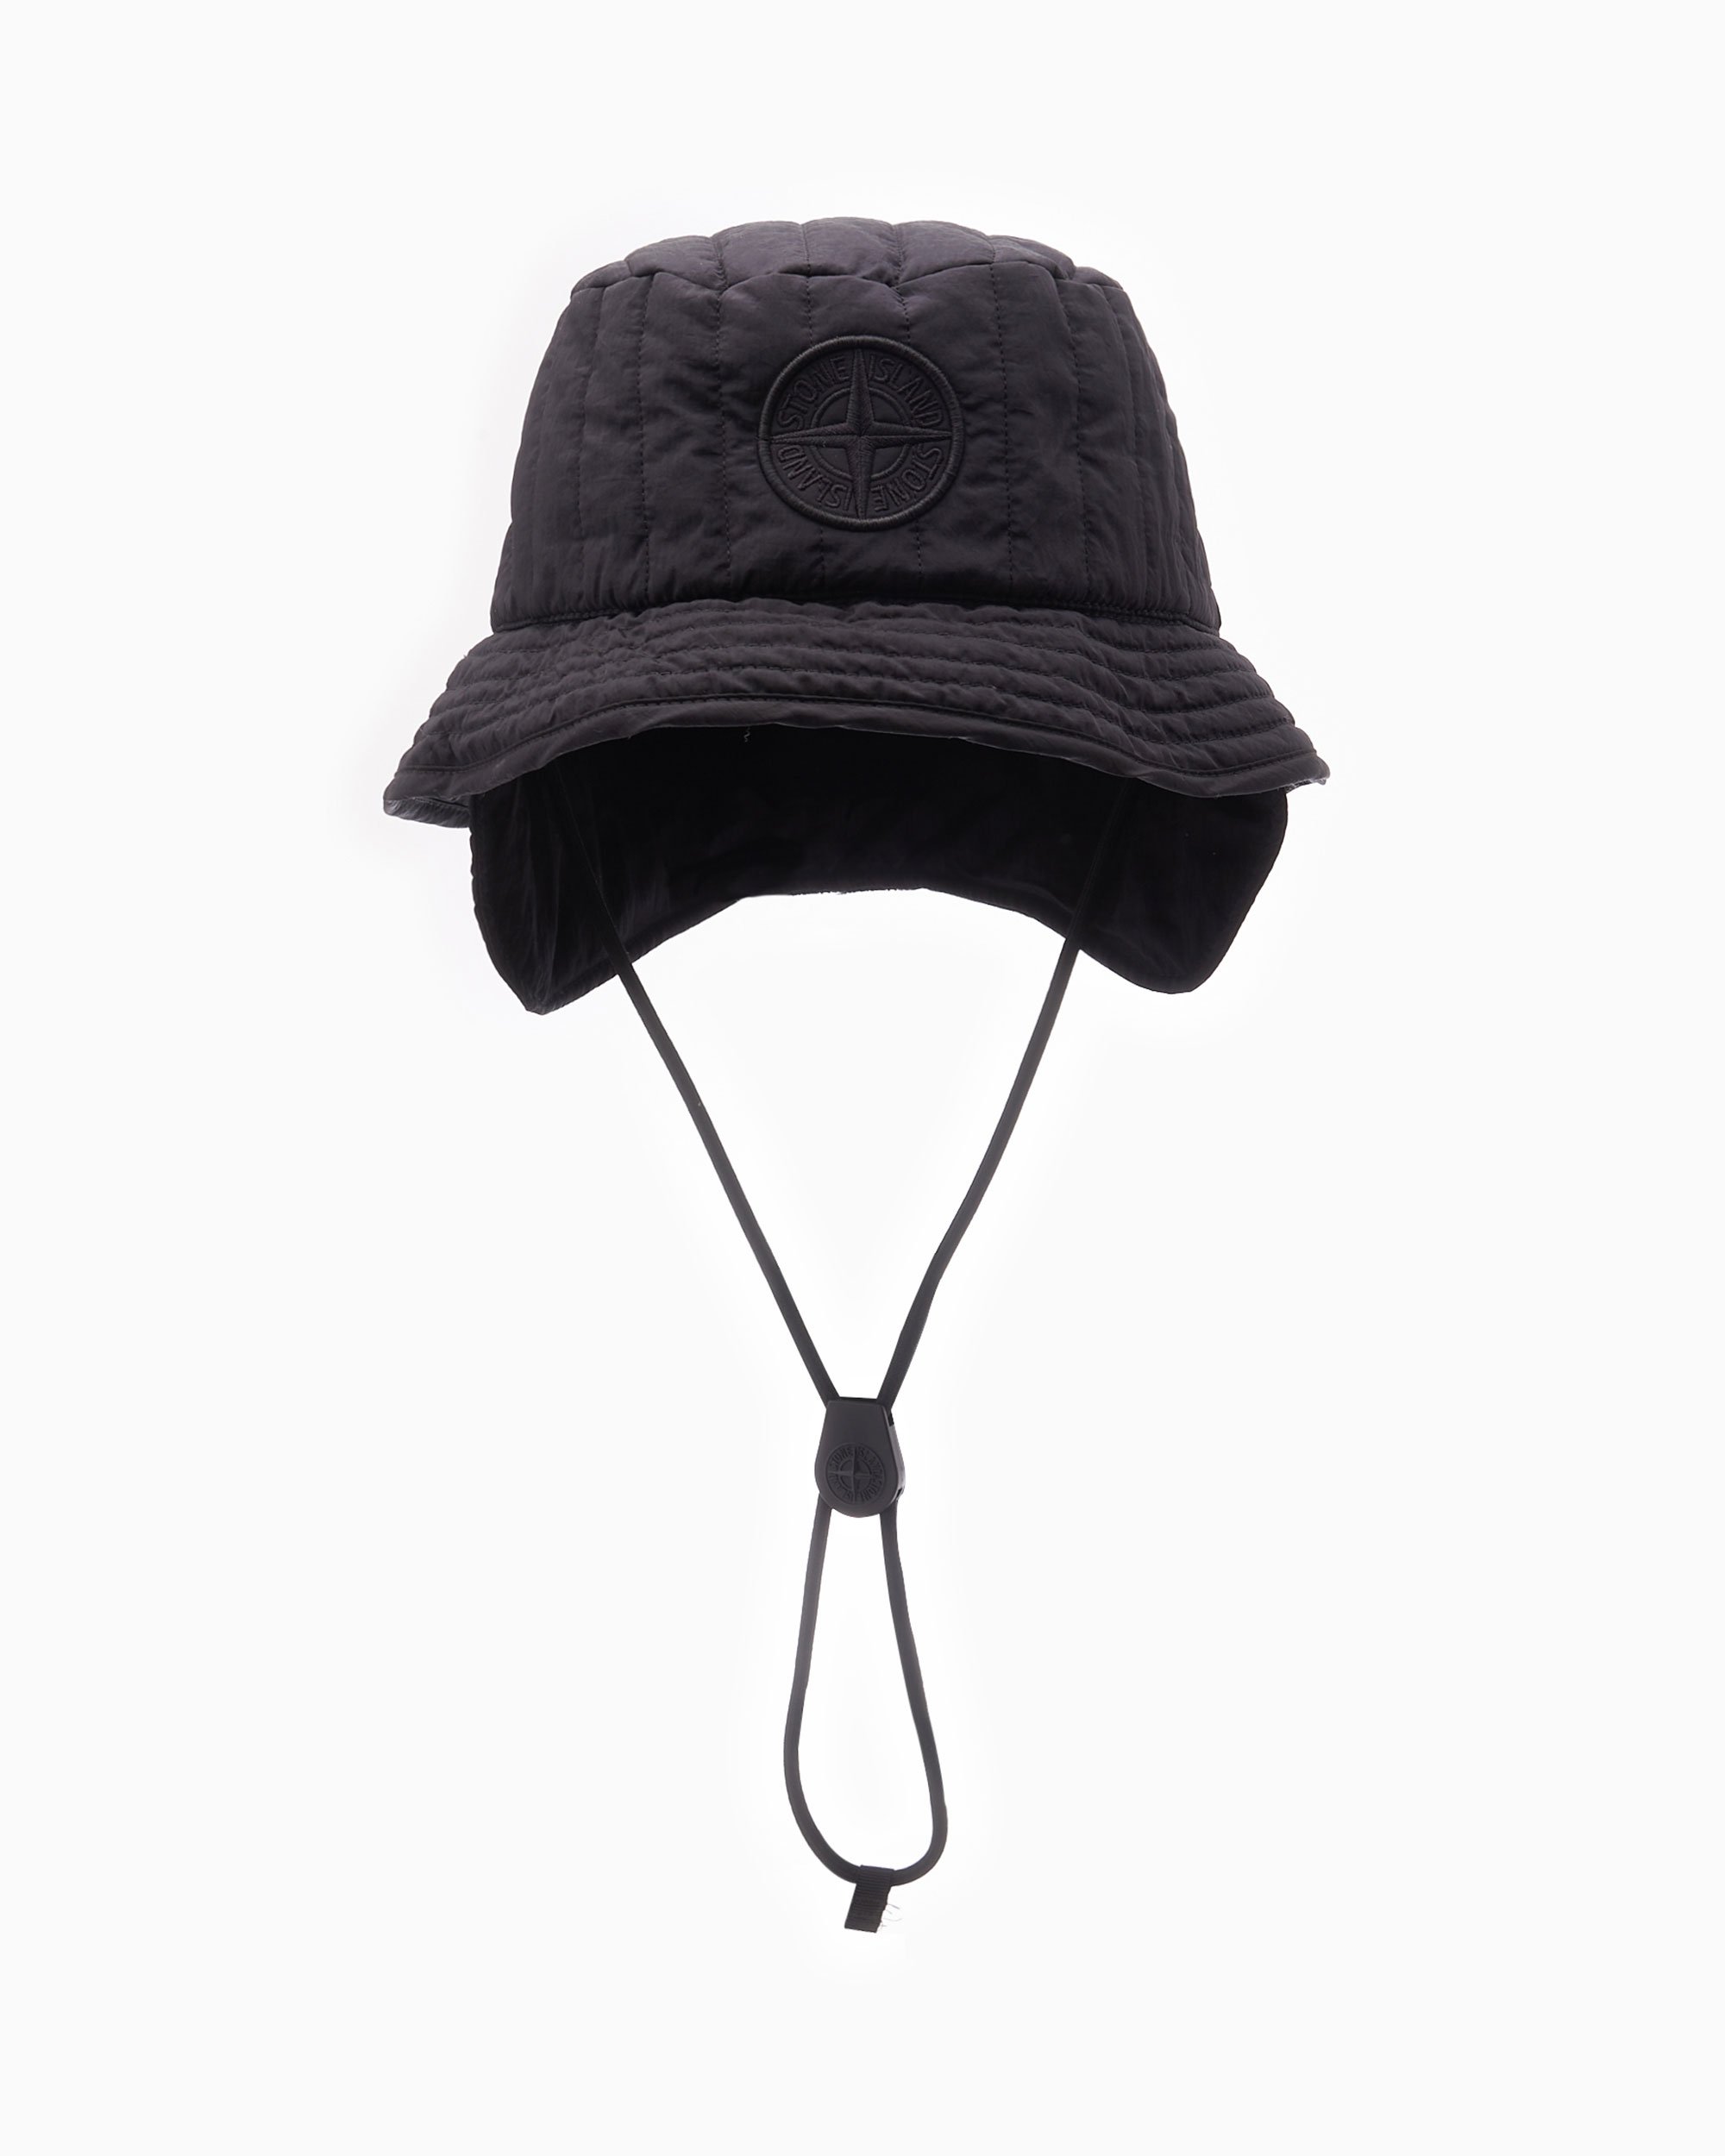 オンライン販売店舗 STONE ISLAND バケットハット - 帽子